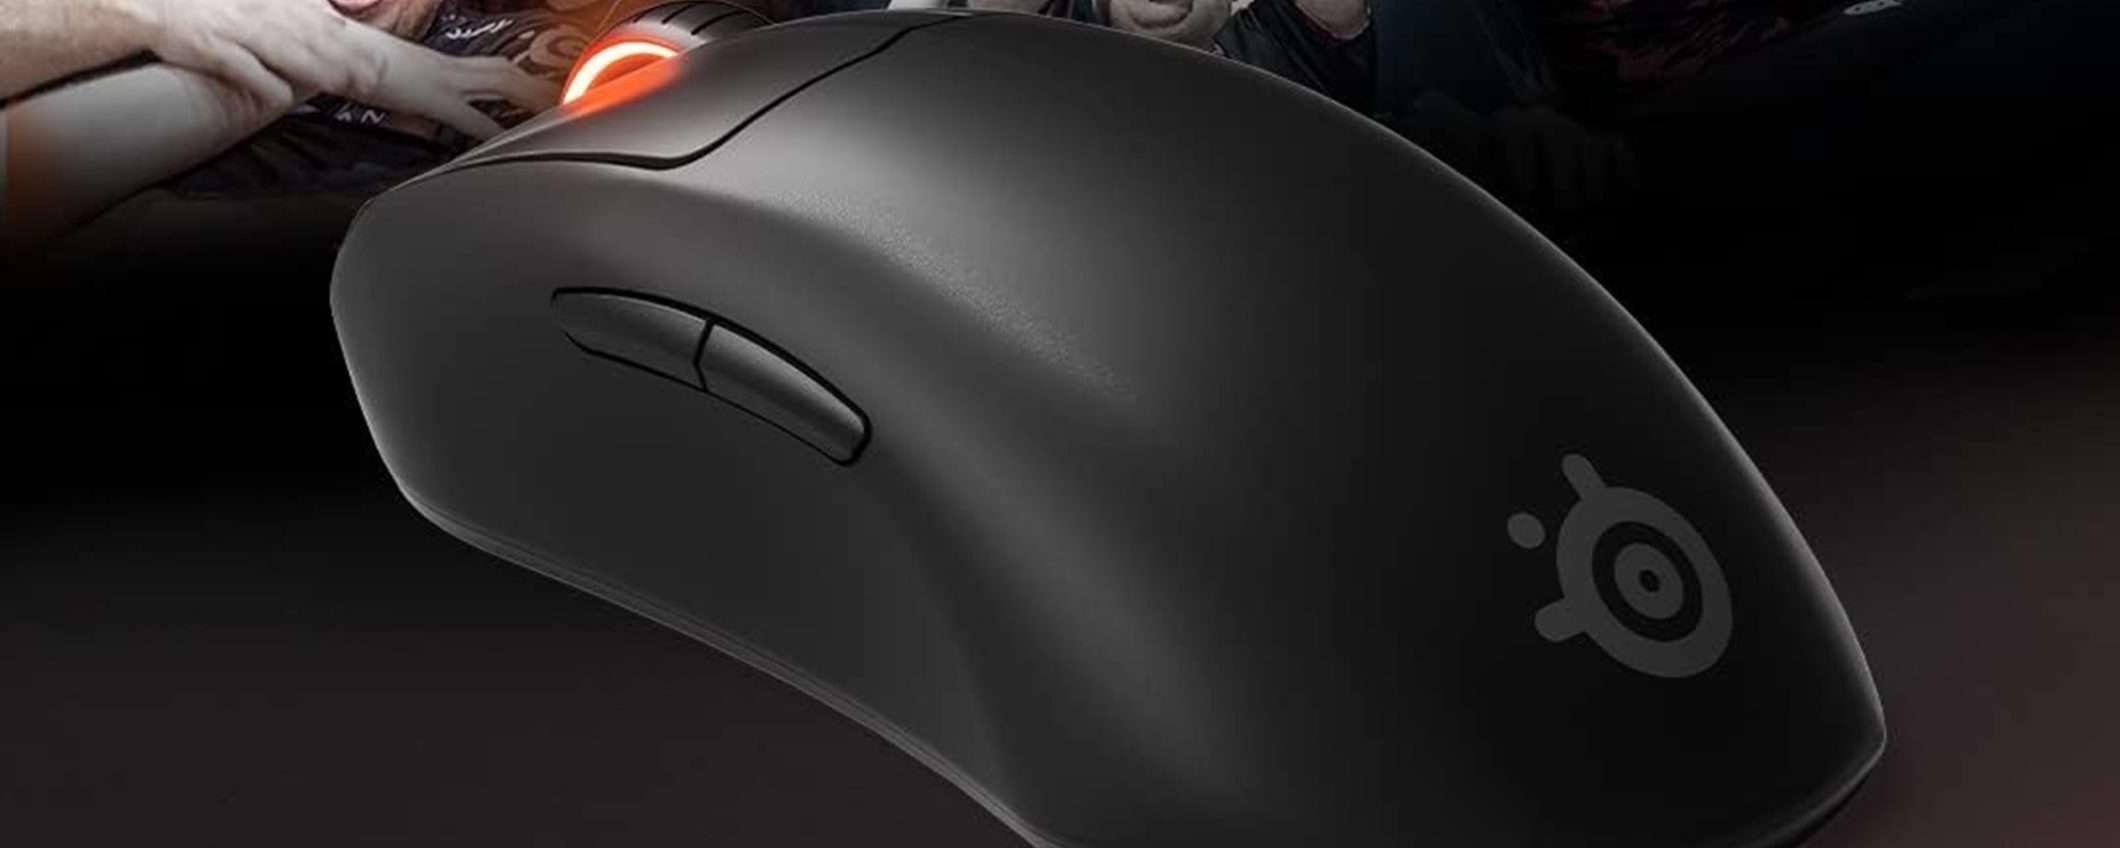 Errore di prezzo? Mouse SteelSeries Prime Mini da 69€ a solo 24€ su Amazon!